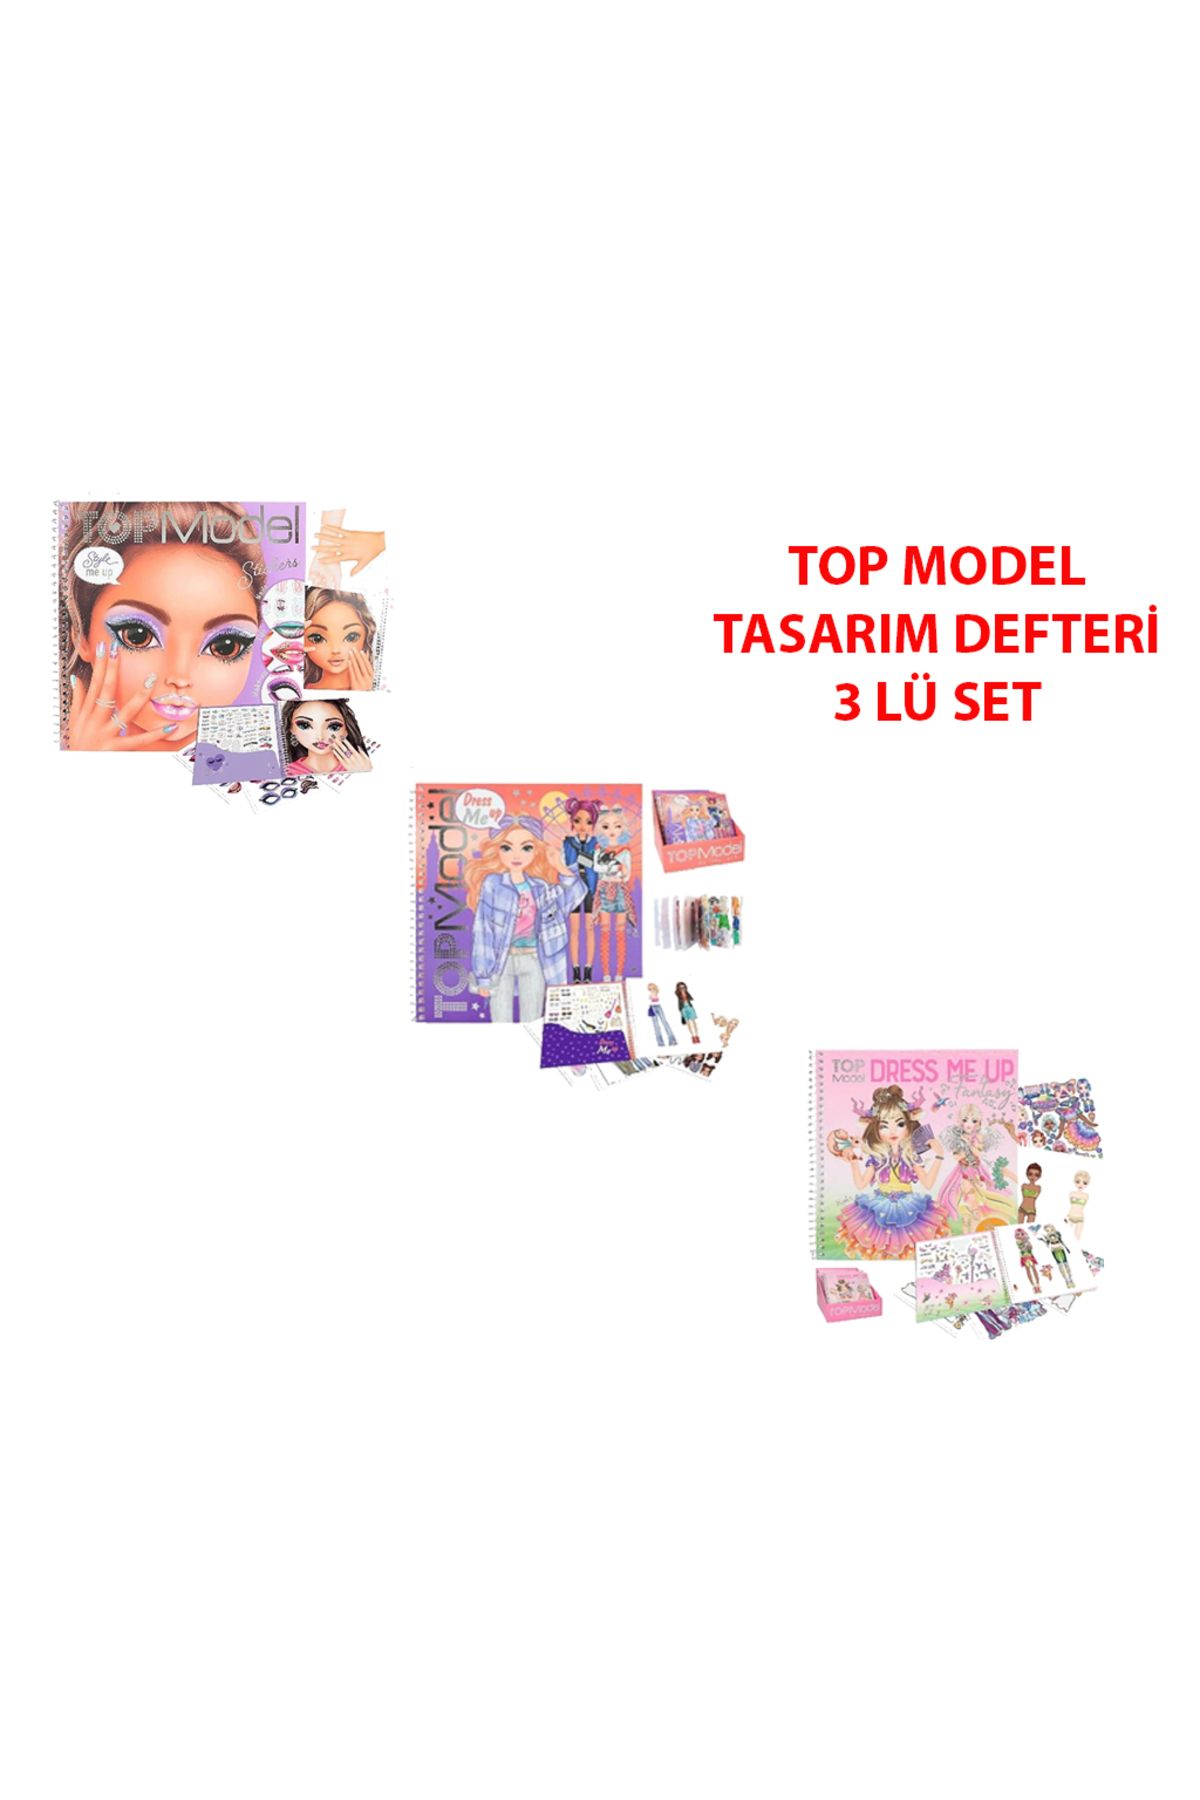 Top Model Topmodel Dress Me Up Fantasy Fiyatı, Yorumları - Trendyol